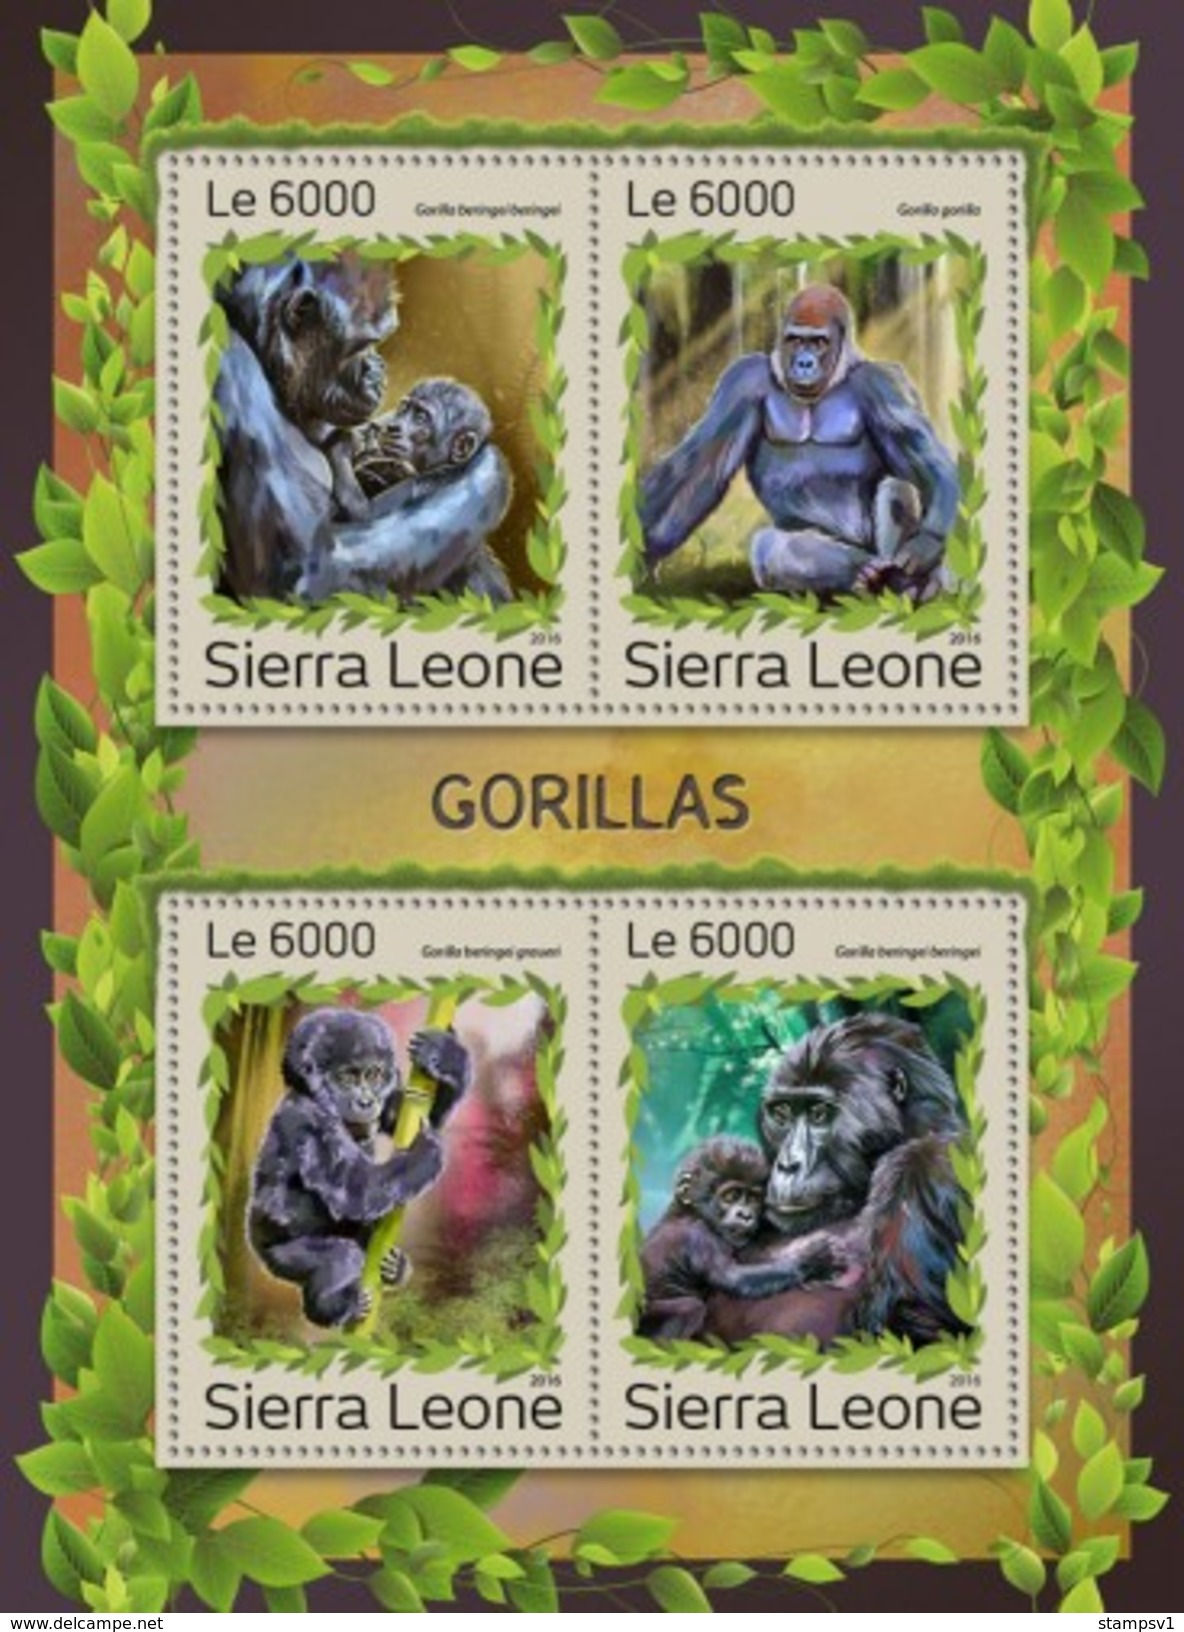 Sierra Leone. 2016 Gorillas. (1218a) - Gorilas